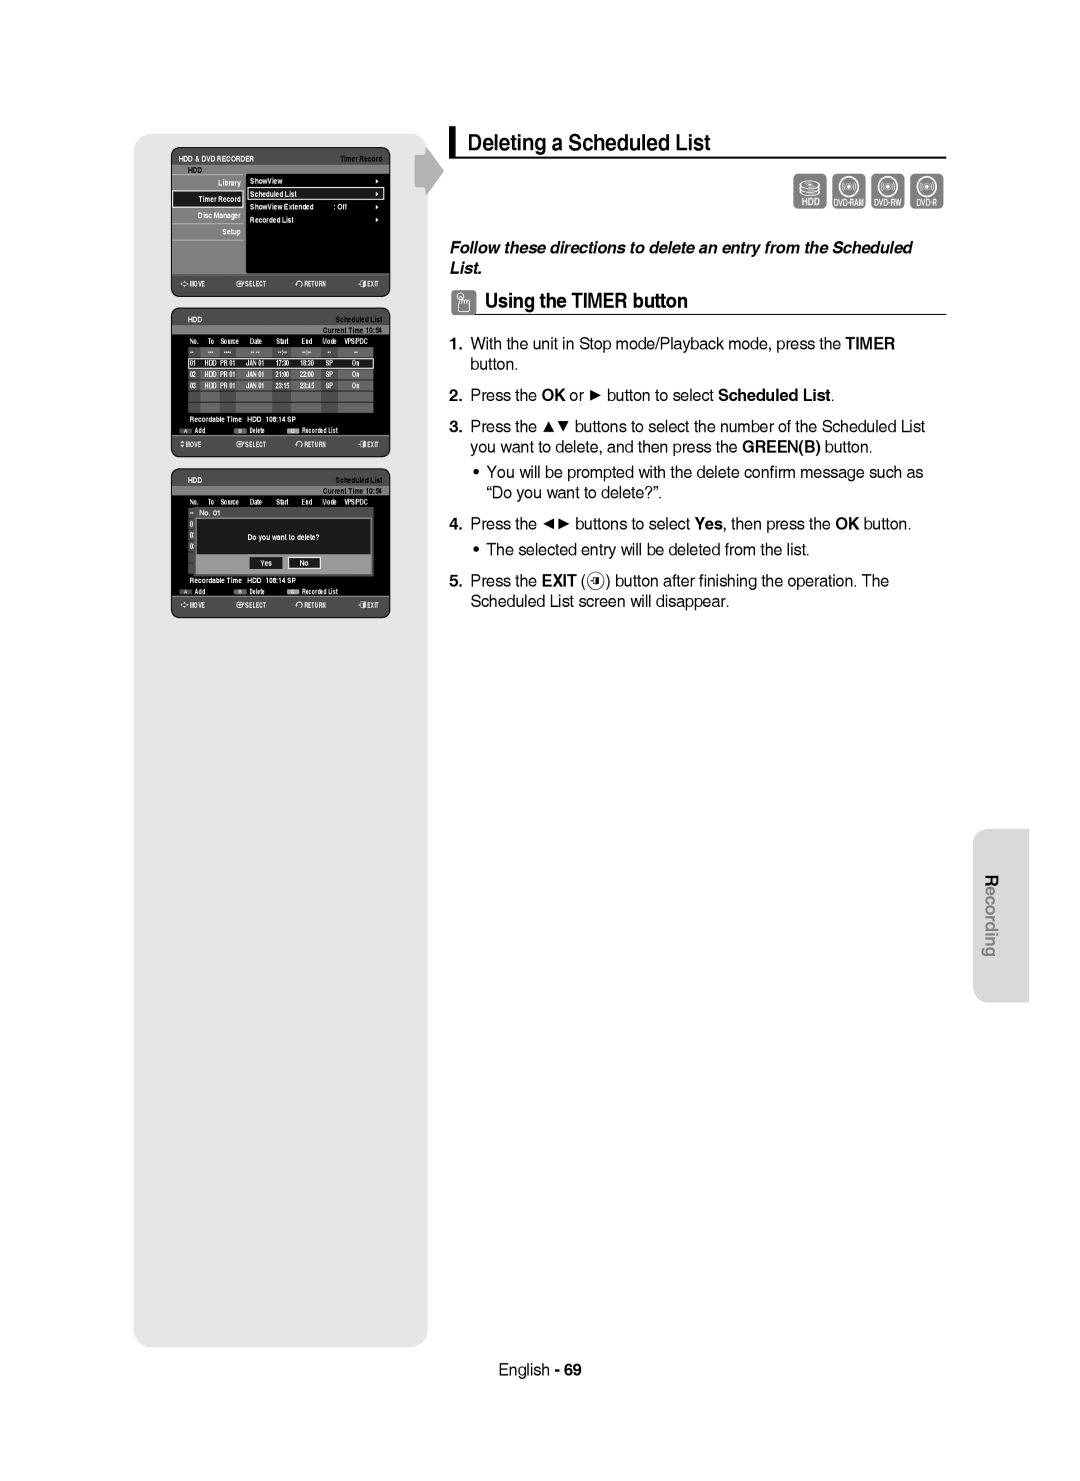 Samsung DVD-HR750/XEG, DVD-HR750/XEB, DVD-HR750/AUS manual Deleting a Scheduled List, Yes 